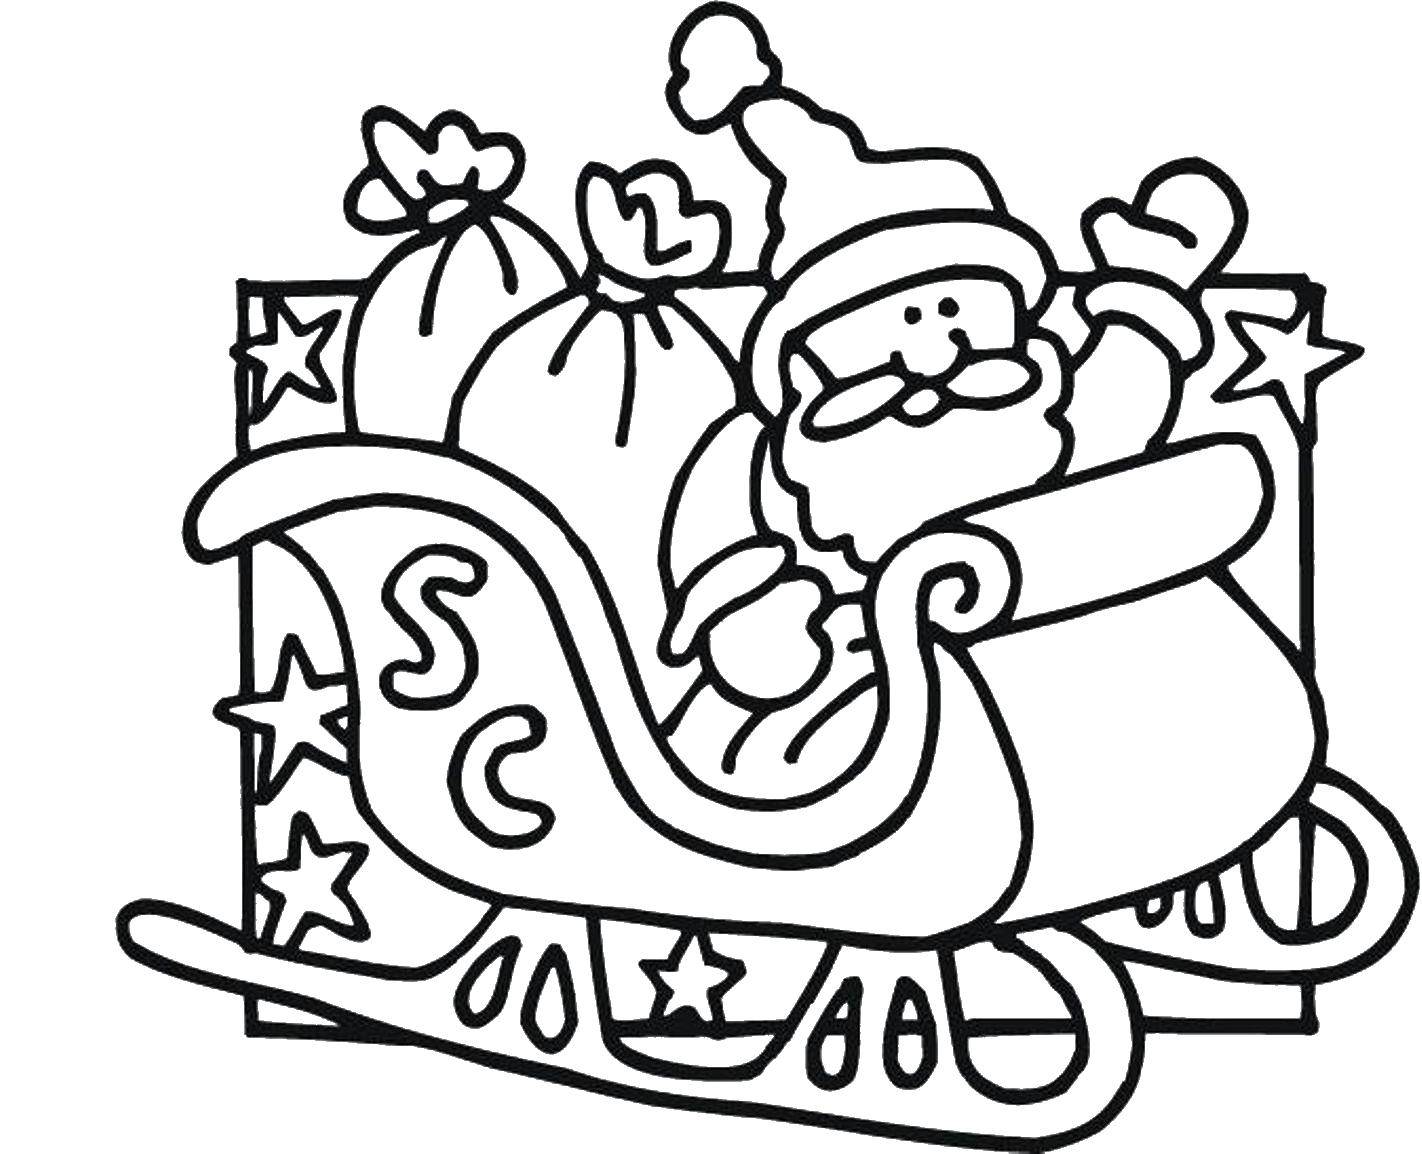 Название: Раскраска Санта клаус на санках. Категория: рождество. Теги: санта клаус, сани.